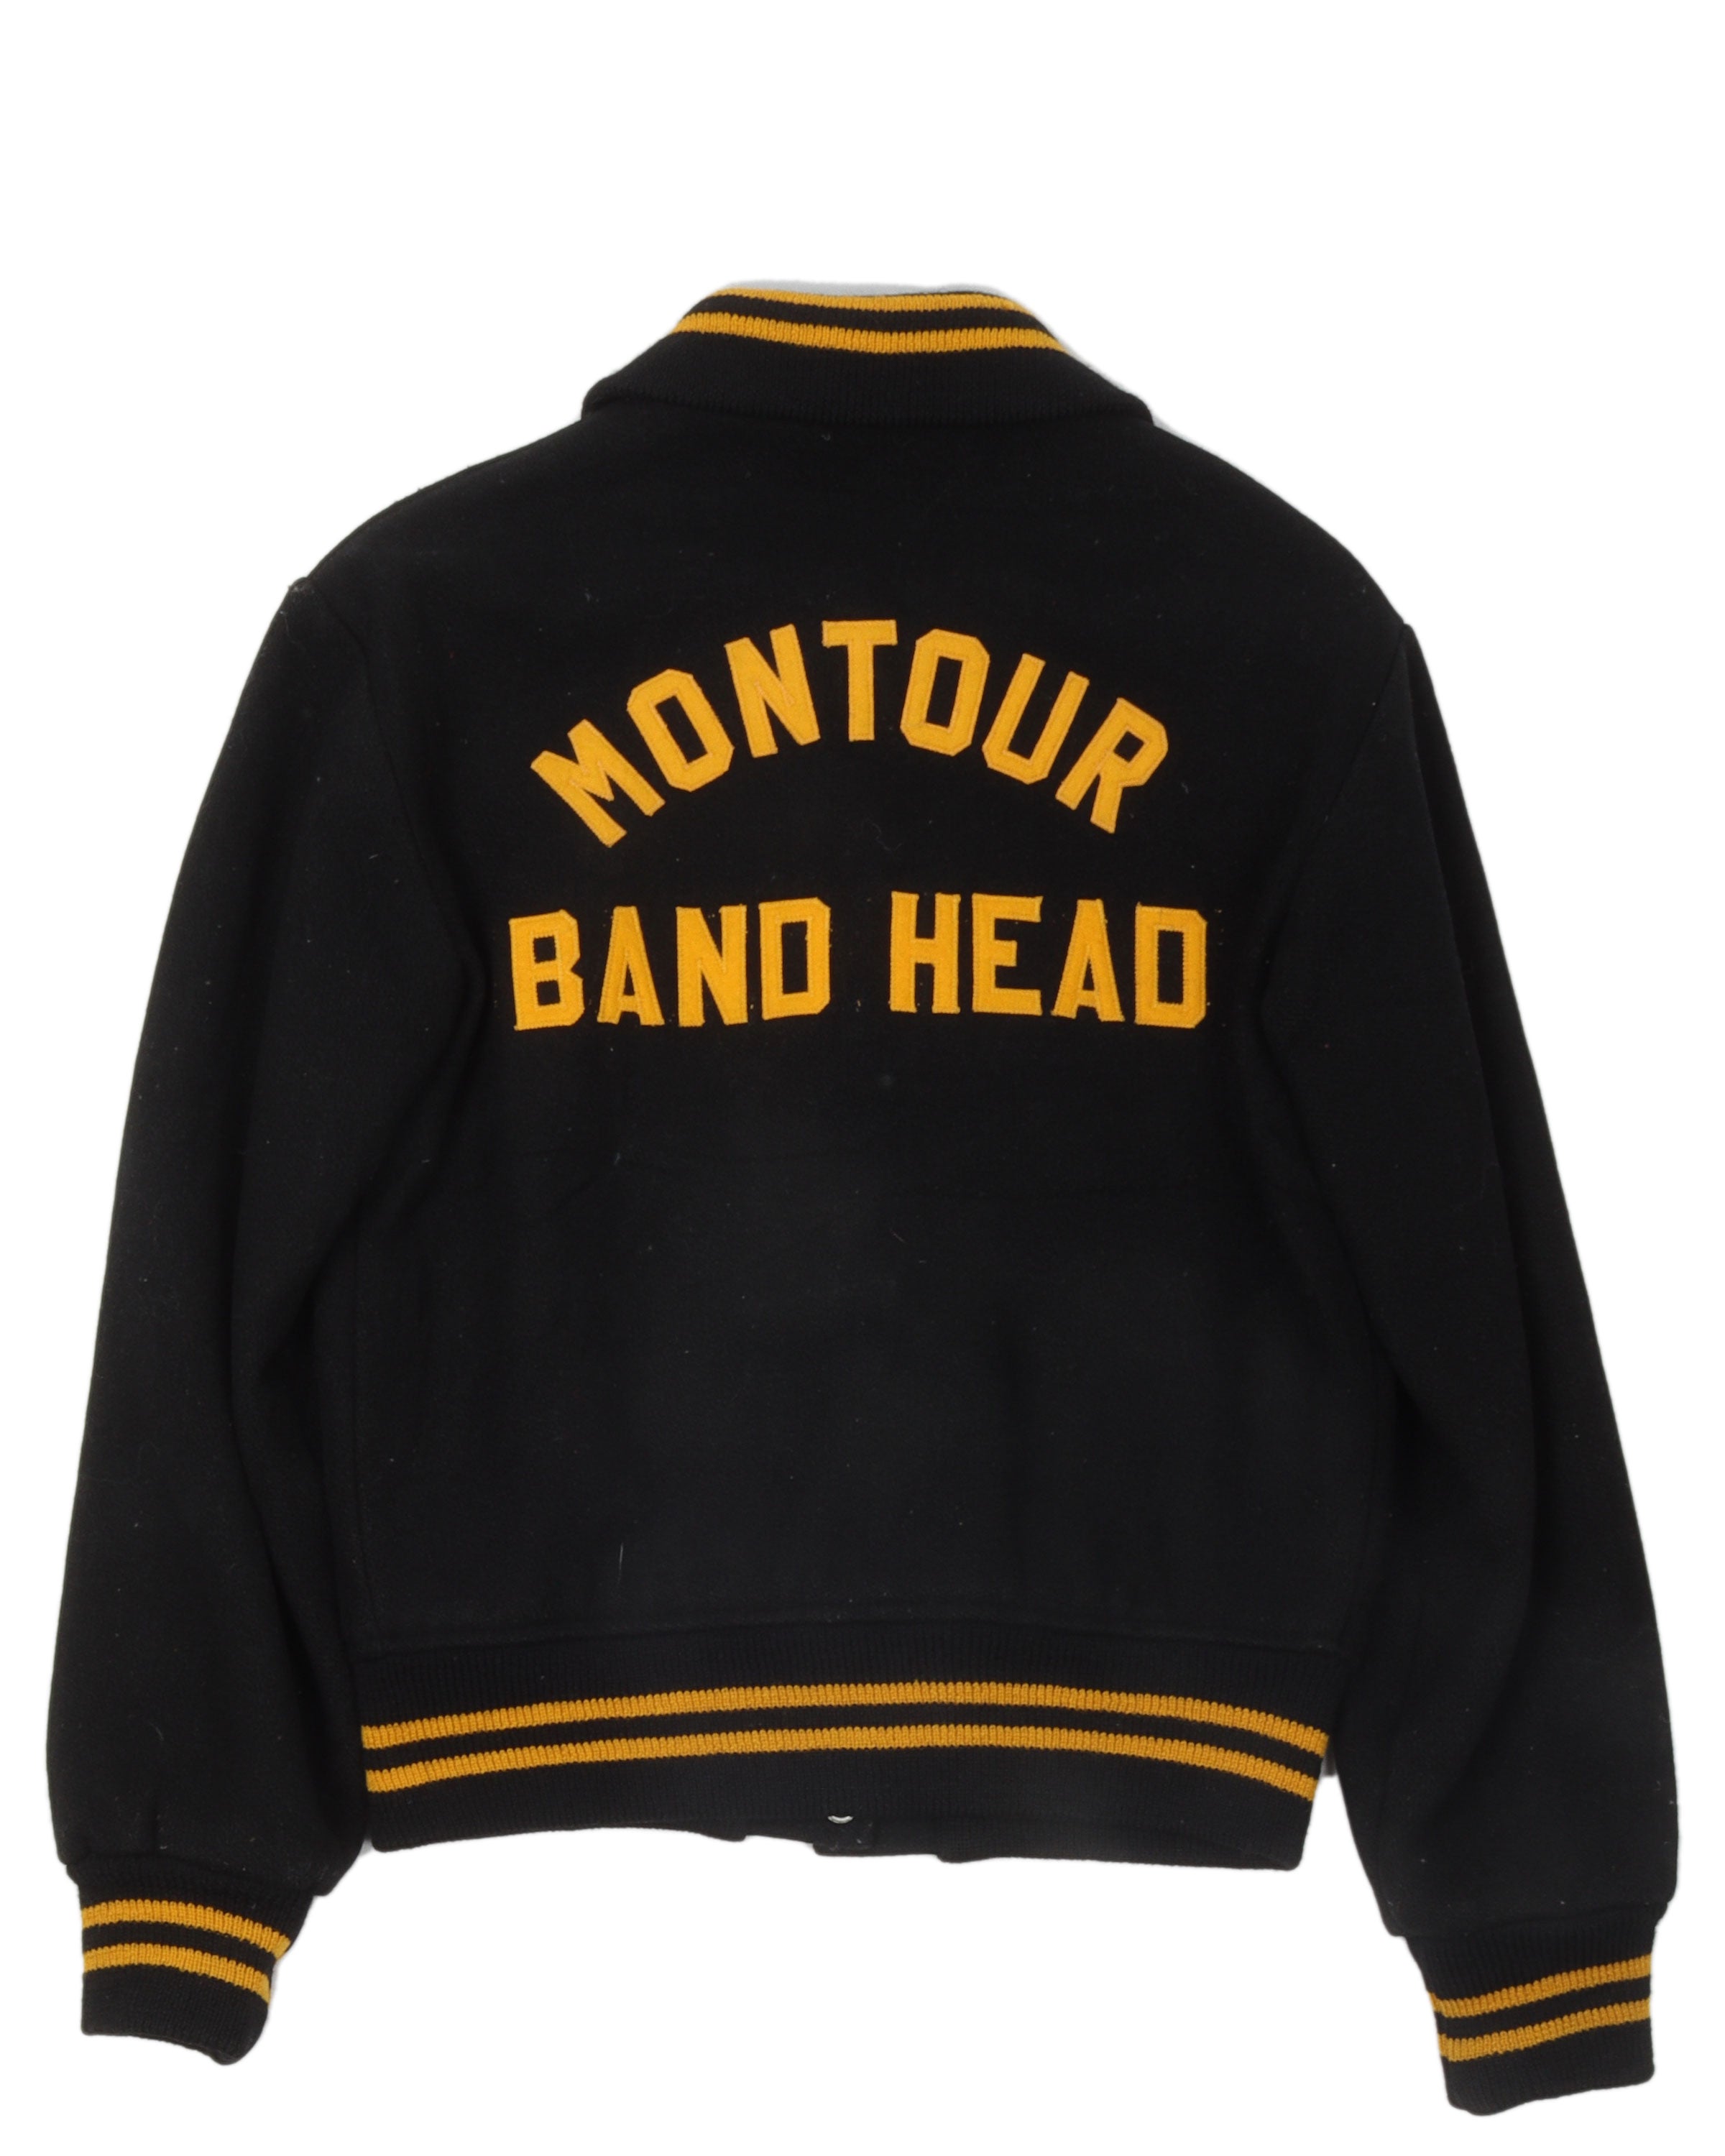 Band Head Varsity Jacket